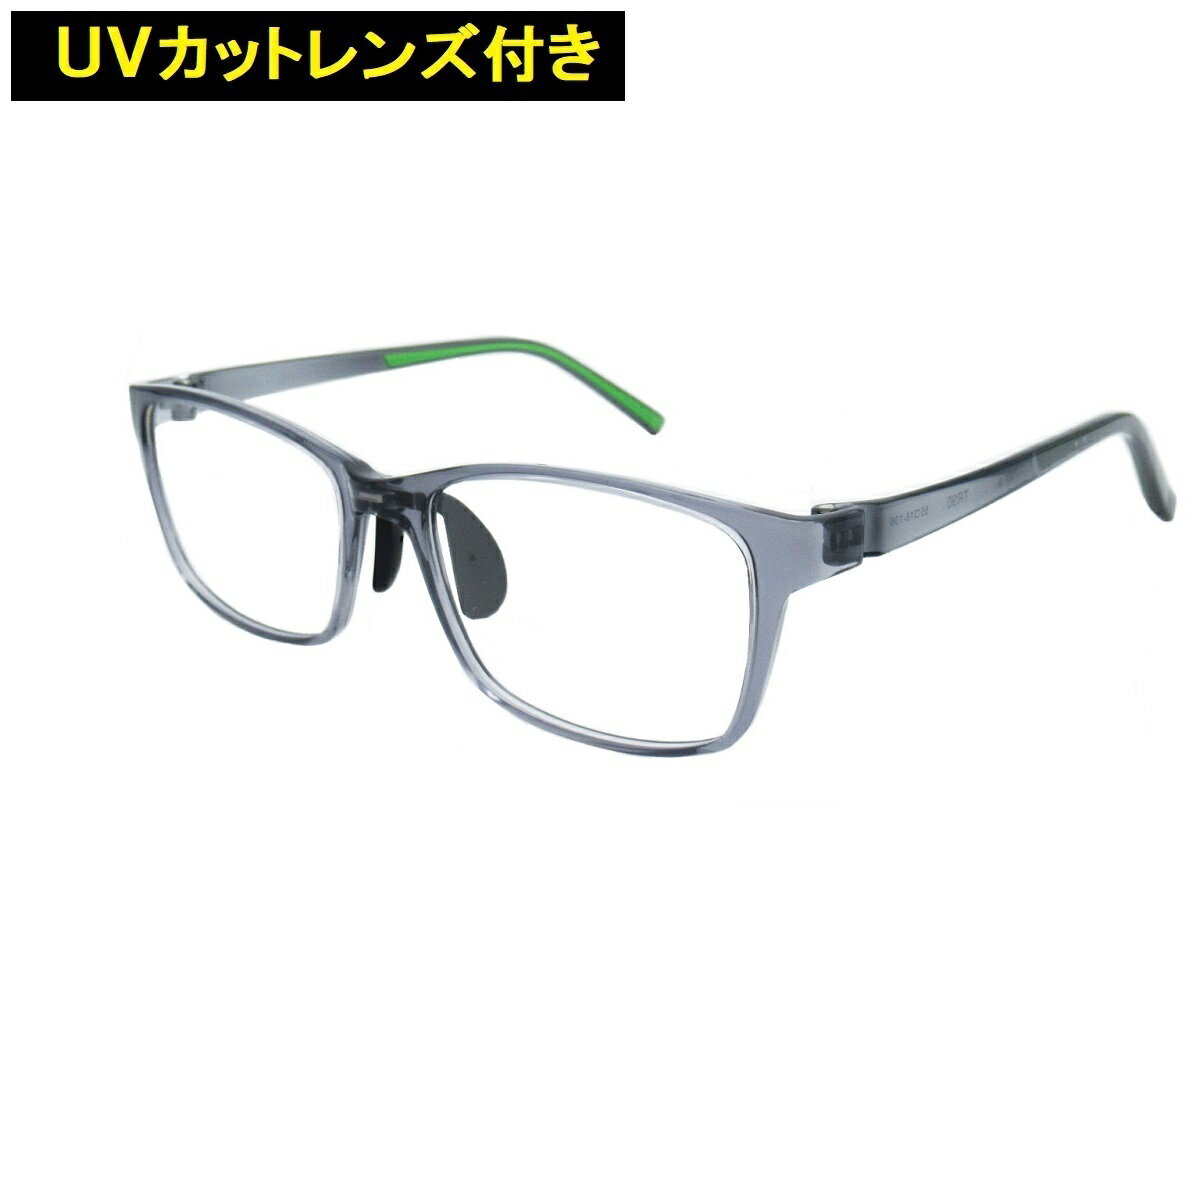 鼻パッド付フレーム UVカットレンズ付 超弾性樹脂TR90 軽量　 伊達メガネ UVカットレンズ付メガネ メガネフレーム眼鏡 FE117-4(サイズ55) クリアレンズ 近視 乱視 老眼鏡 ブルーライト